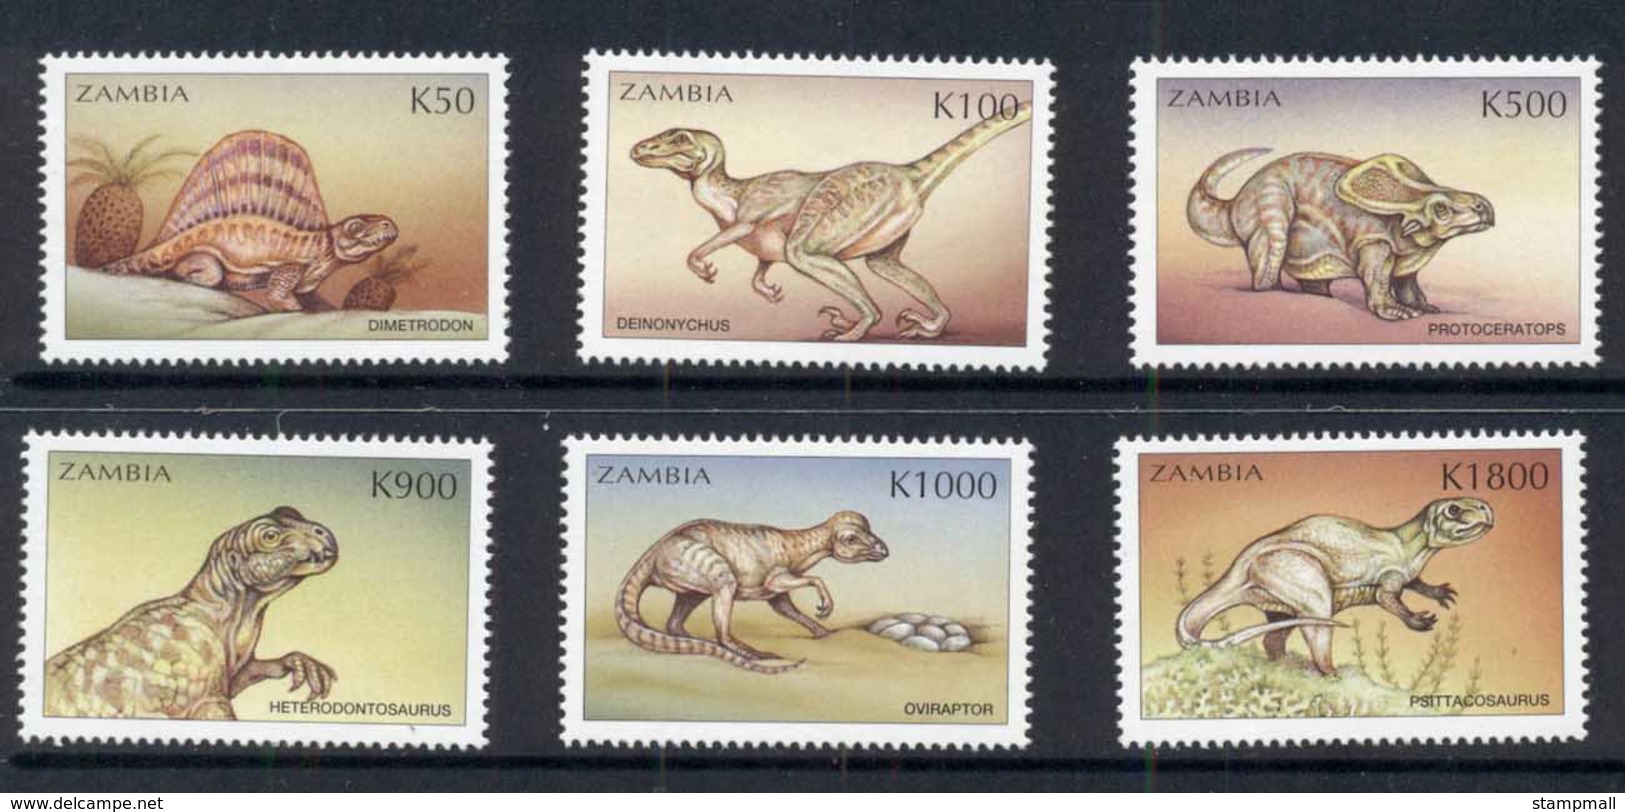 Zambia 1999 Prehistoric Animals, Dinosaurs MUH - Zambia (1965-...)